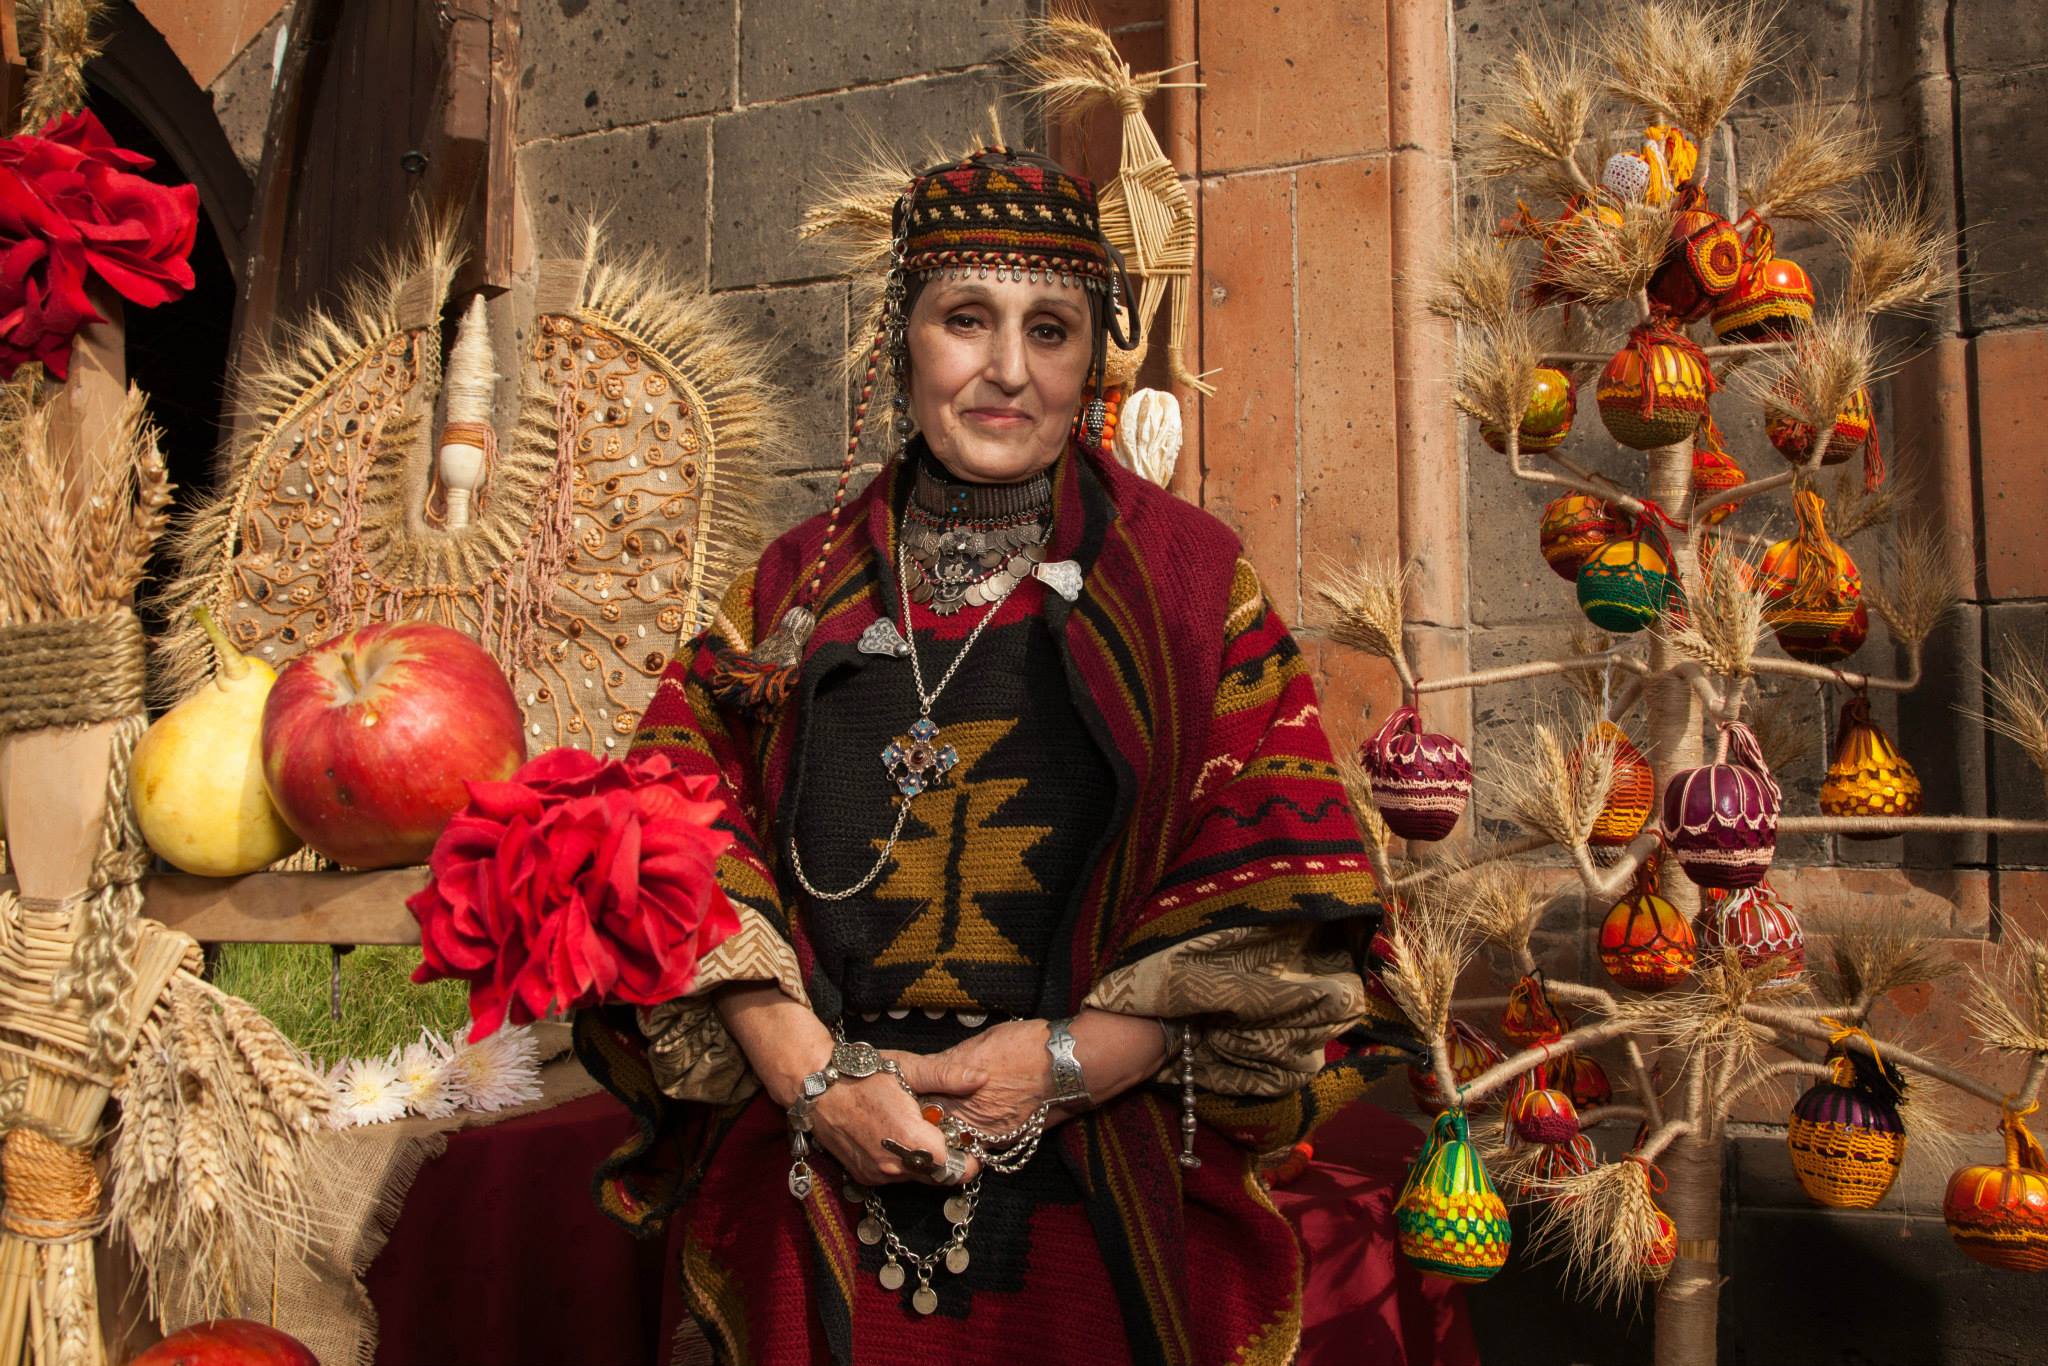 Клипы Поздравления С Новым Годом На Армянском